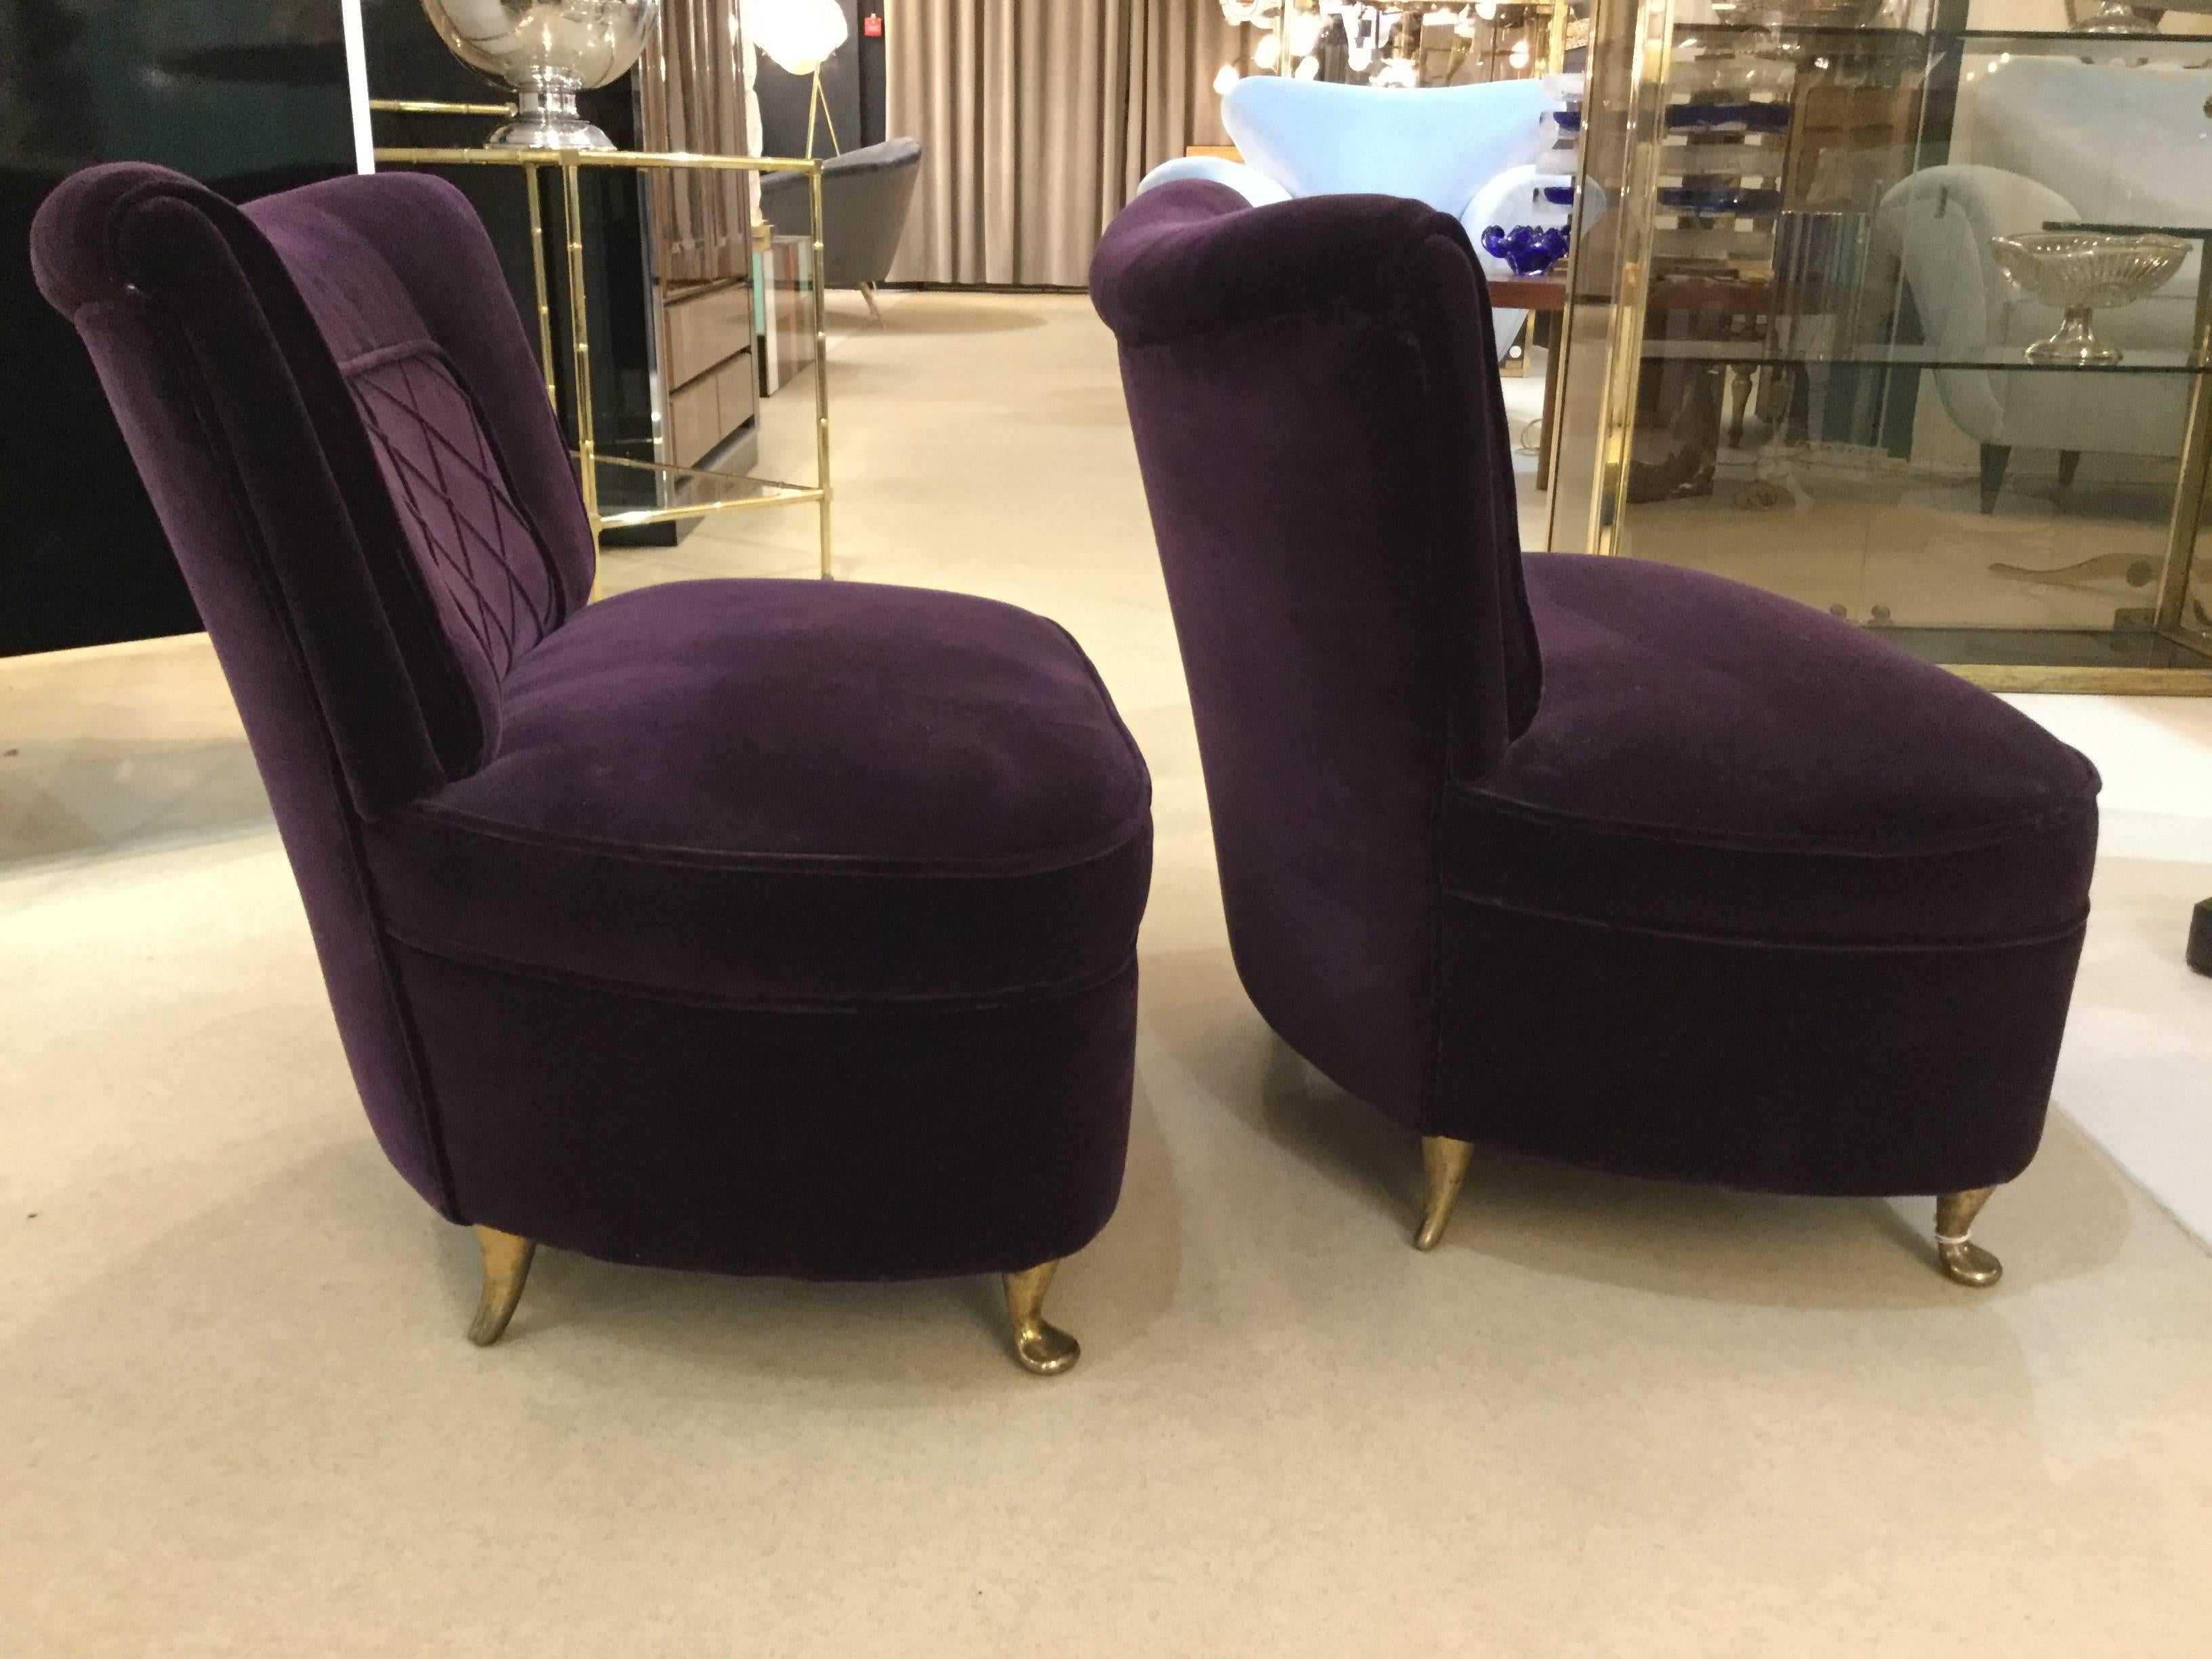 A pair of Italian designed slipper chairs reupholstered in velvet on brass feet, style of Osvaldo Borsani, circa 1940.